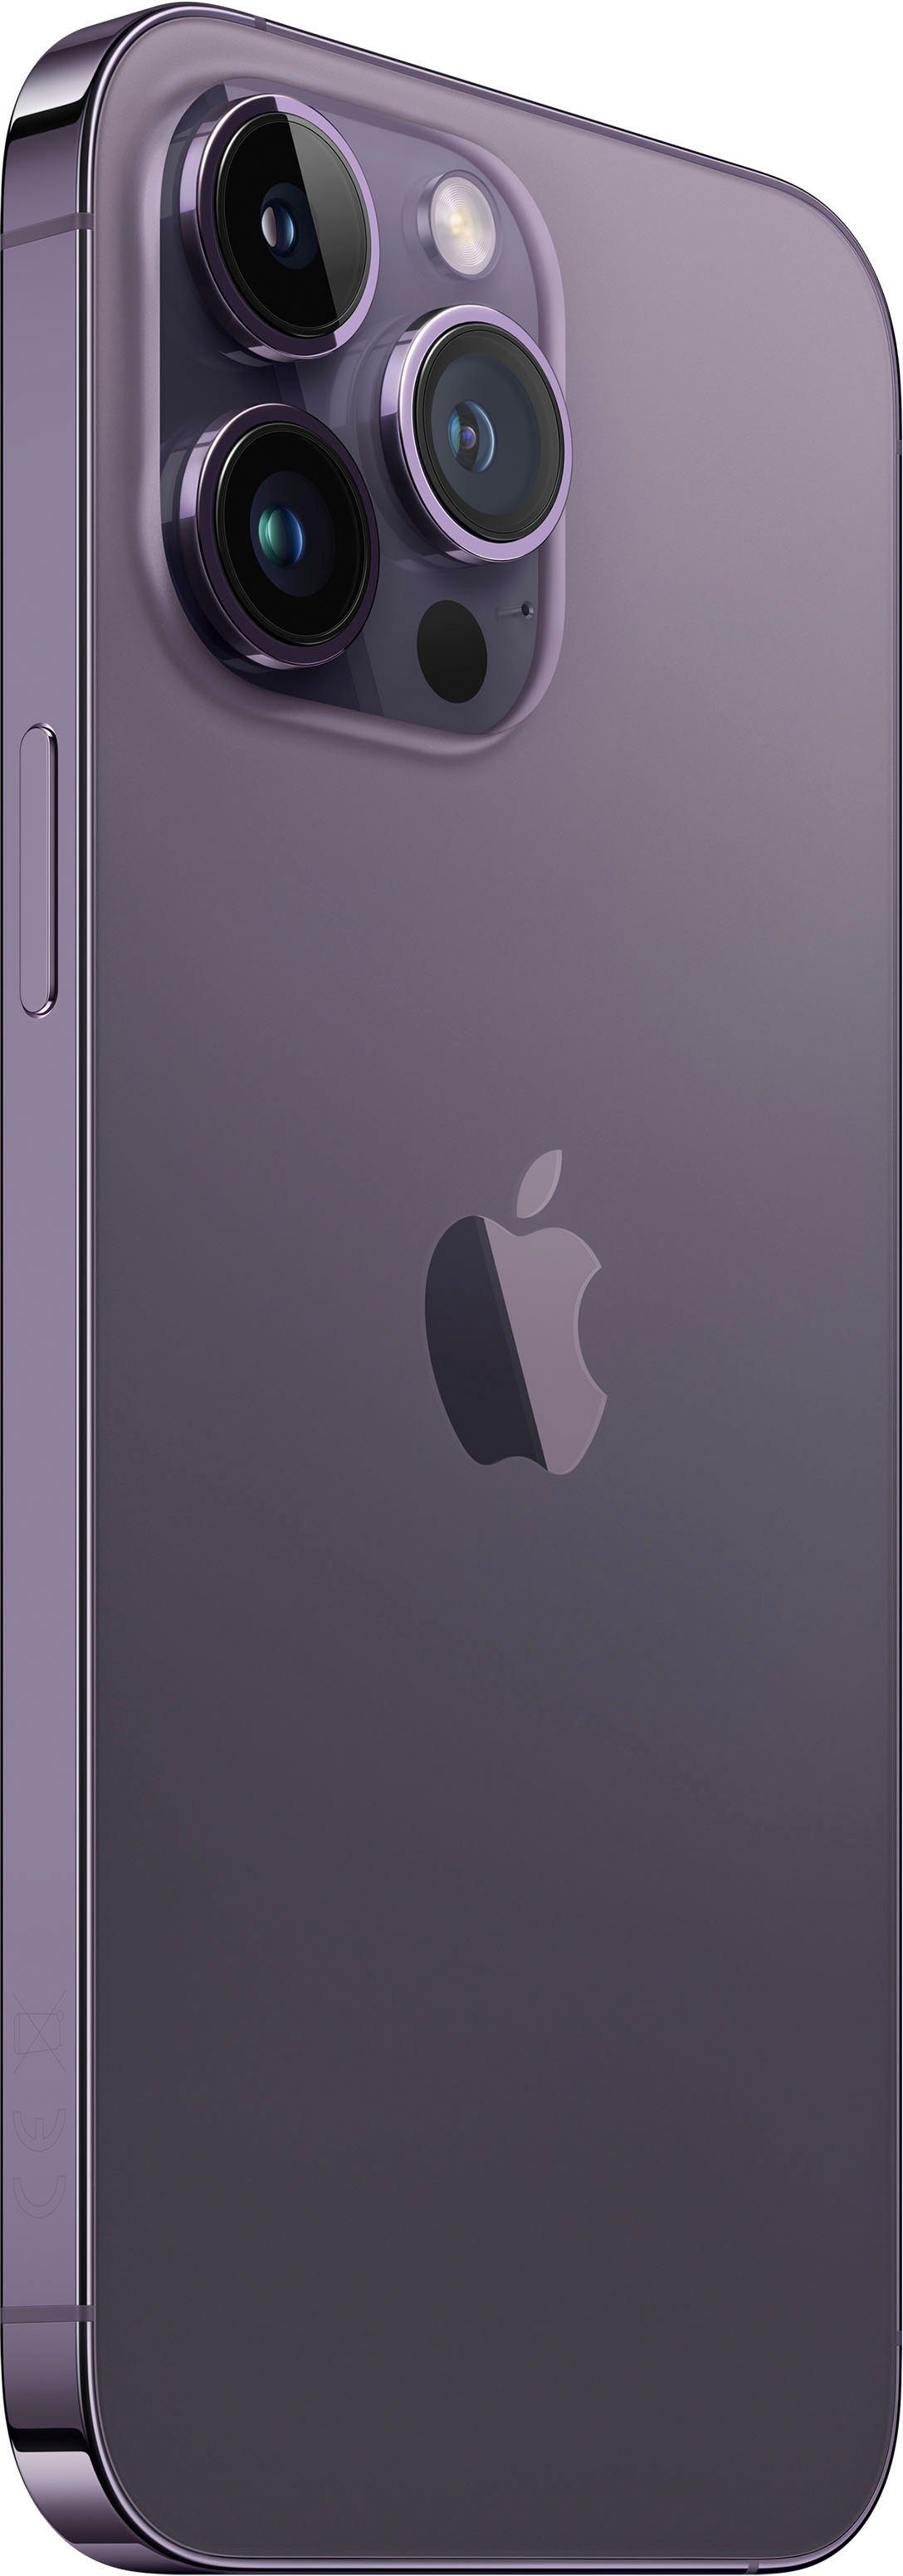 48 Kamera) Speicherplatz, Max 14 (17 MP cm/6,7 GB 1TB 1024 deep Smartphone Pro Zoll, purple iPhone Apple